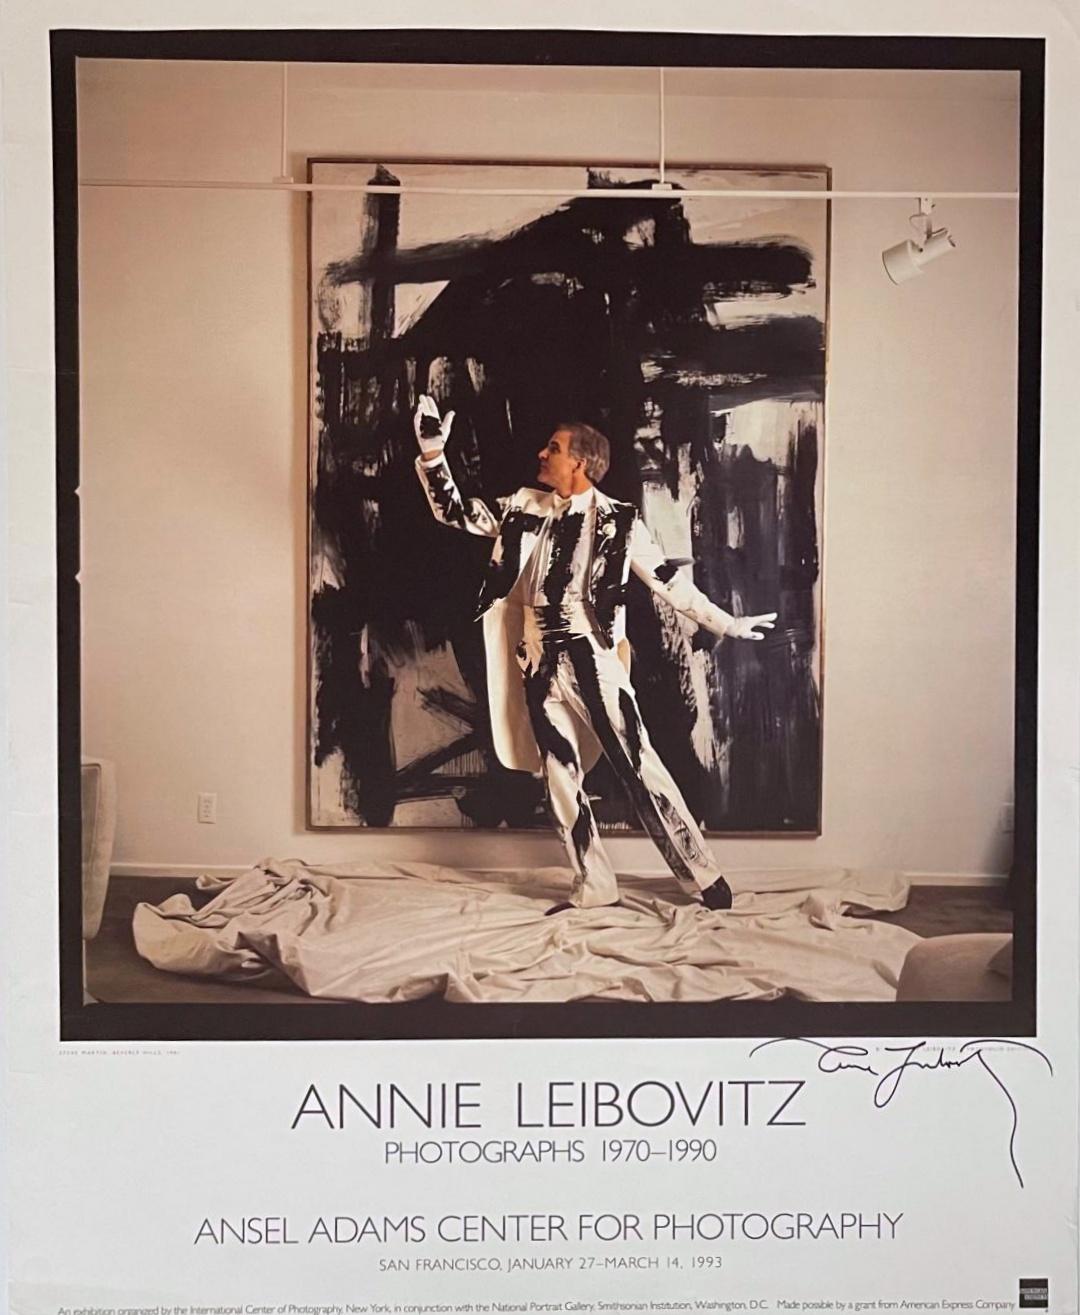 Annie Leibovitz
Photographies 1970-1990 (signées par Annie Leibovitz), 1993
Affiche lithographique offset (signée)
Signé au marqueur noir au recto.
30 × 24 pouces
Ansel Adams Center for Photography, San Francisco en collaboration avec la National